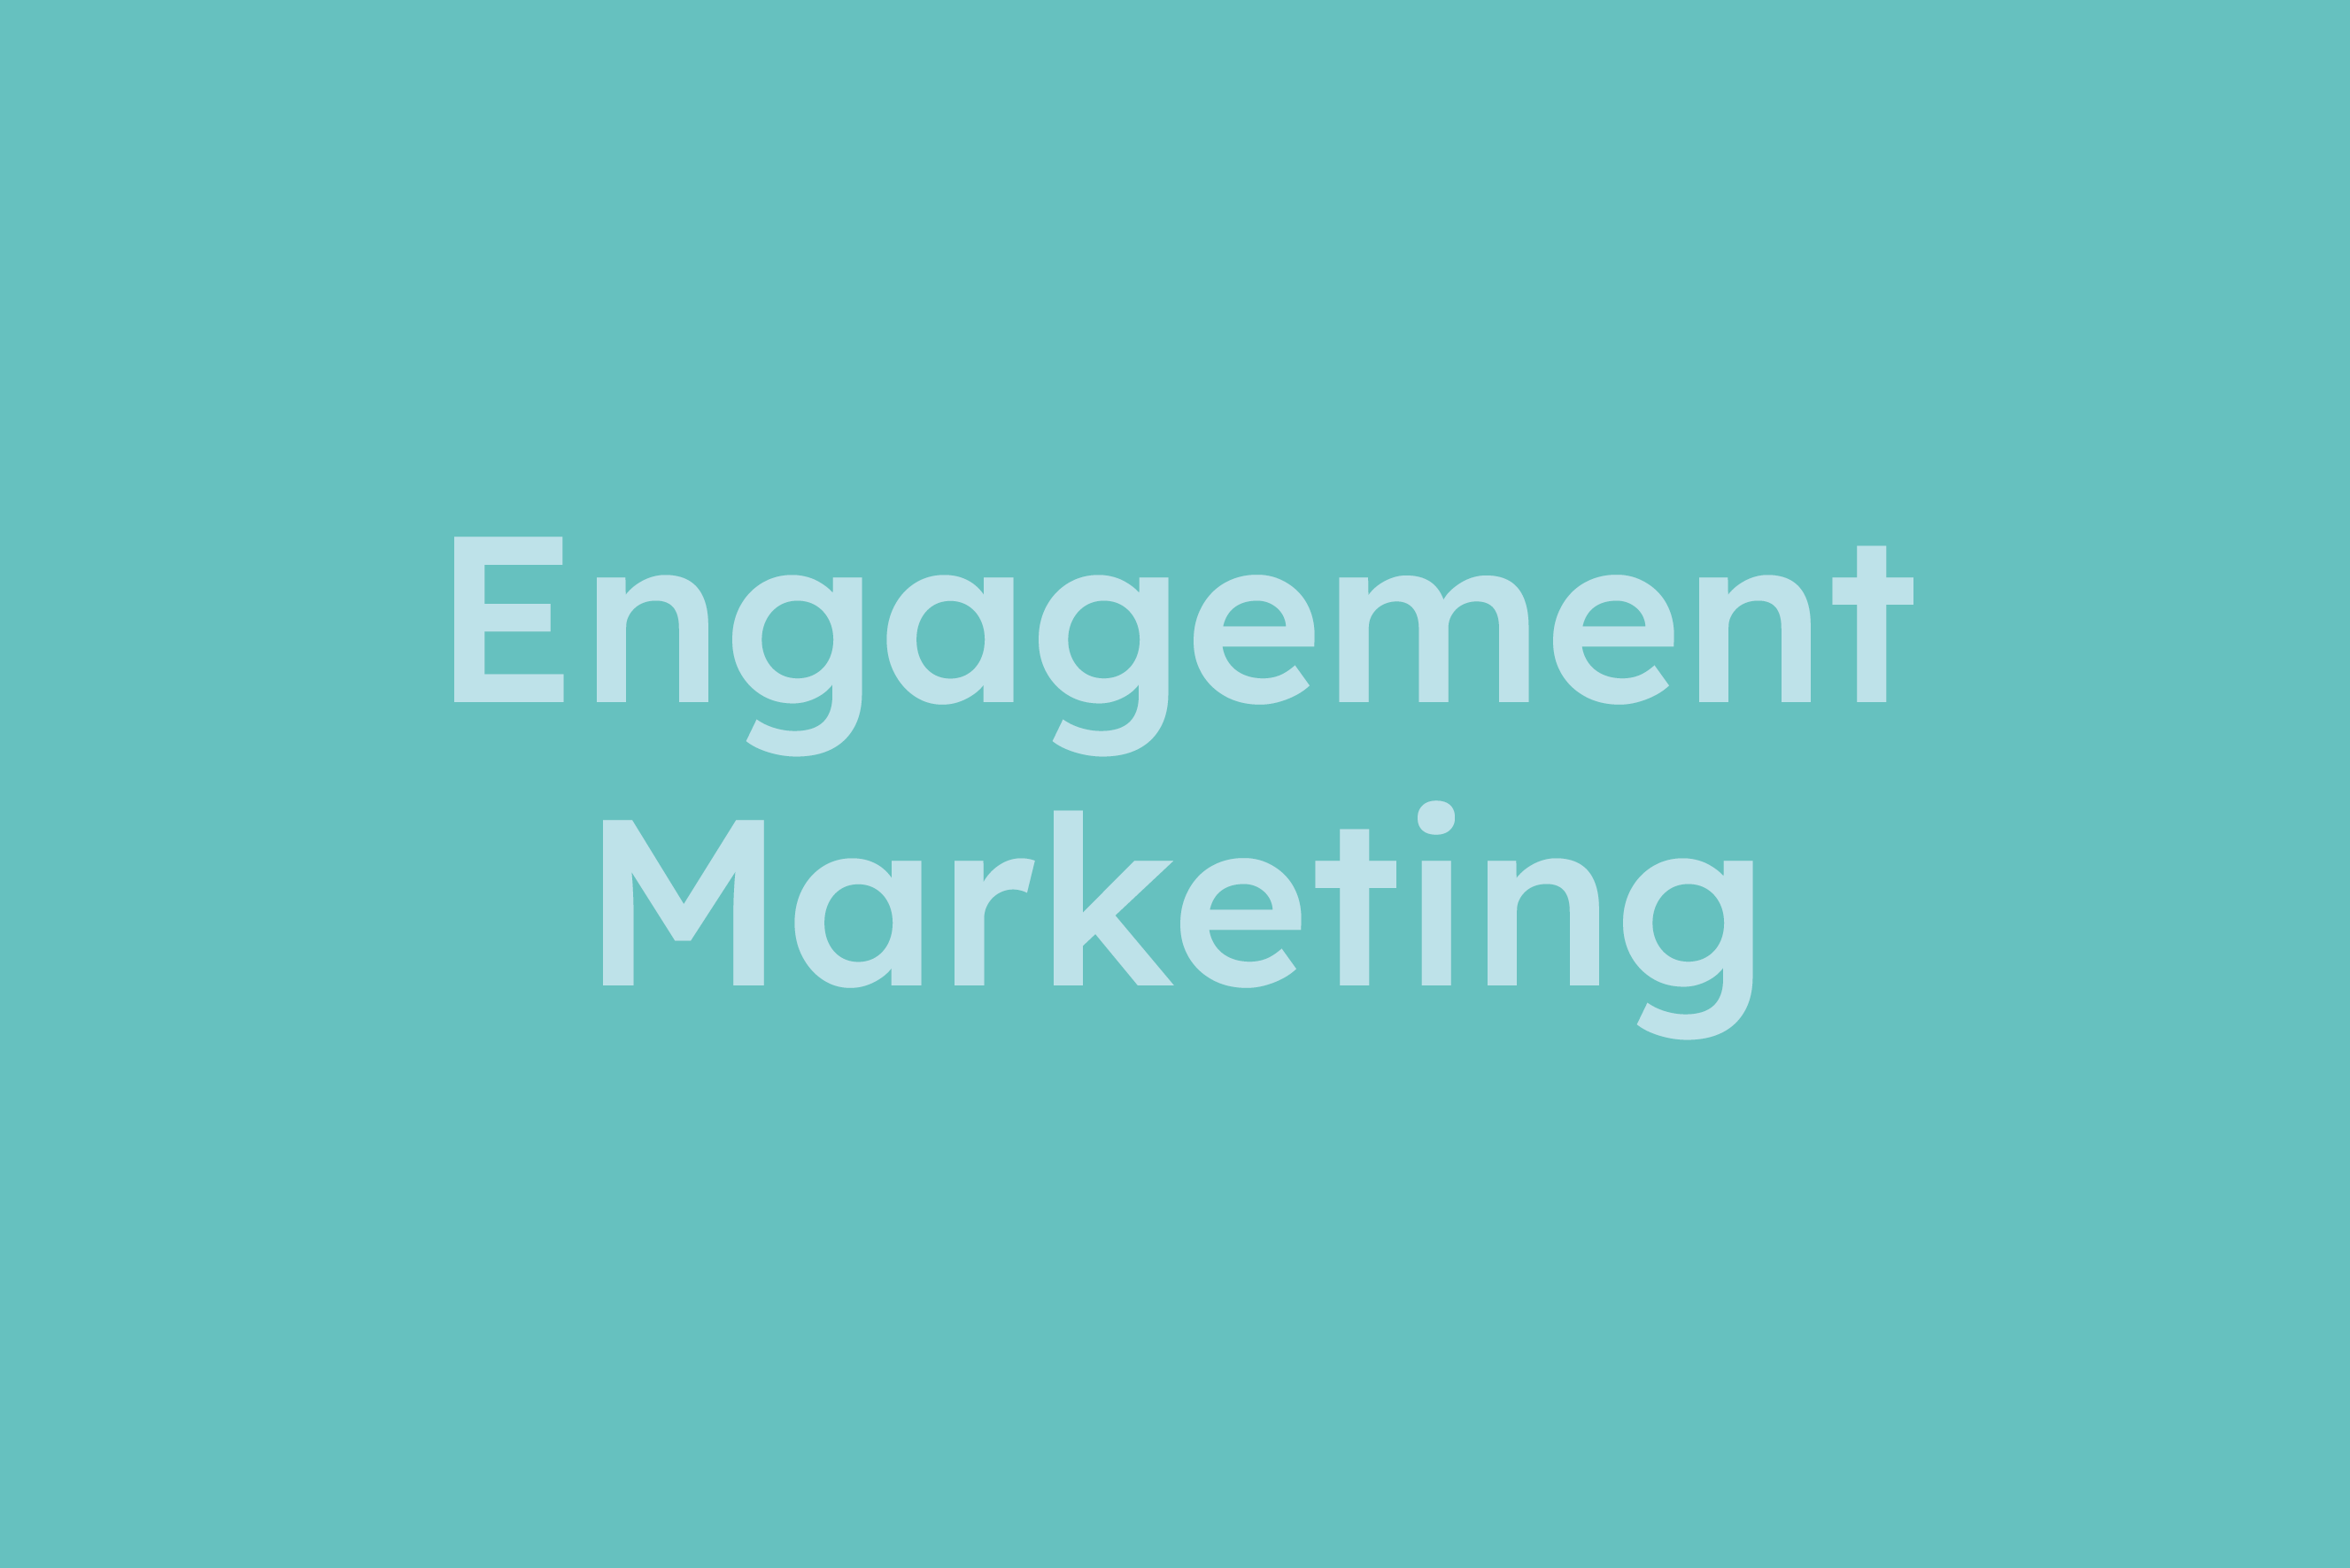 Engagement Marketing erklärt im Glossar von Campaign